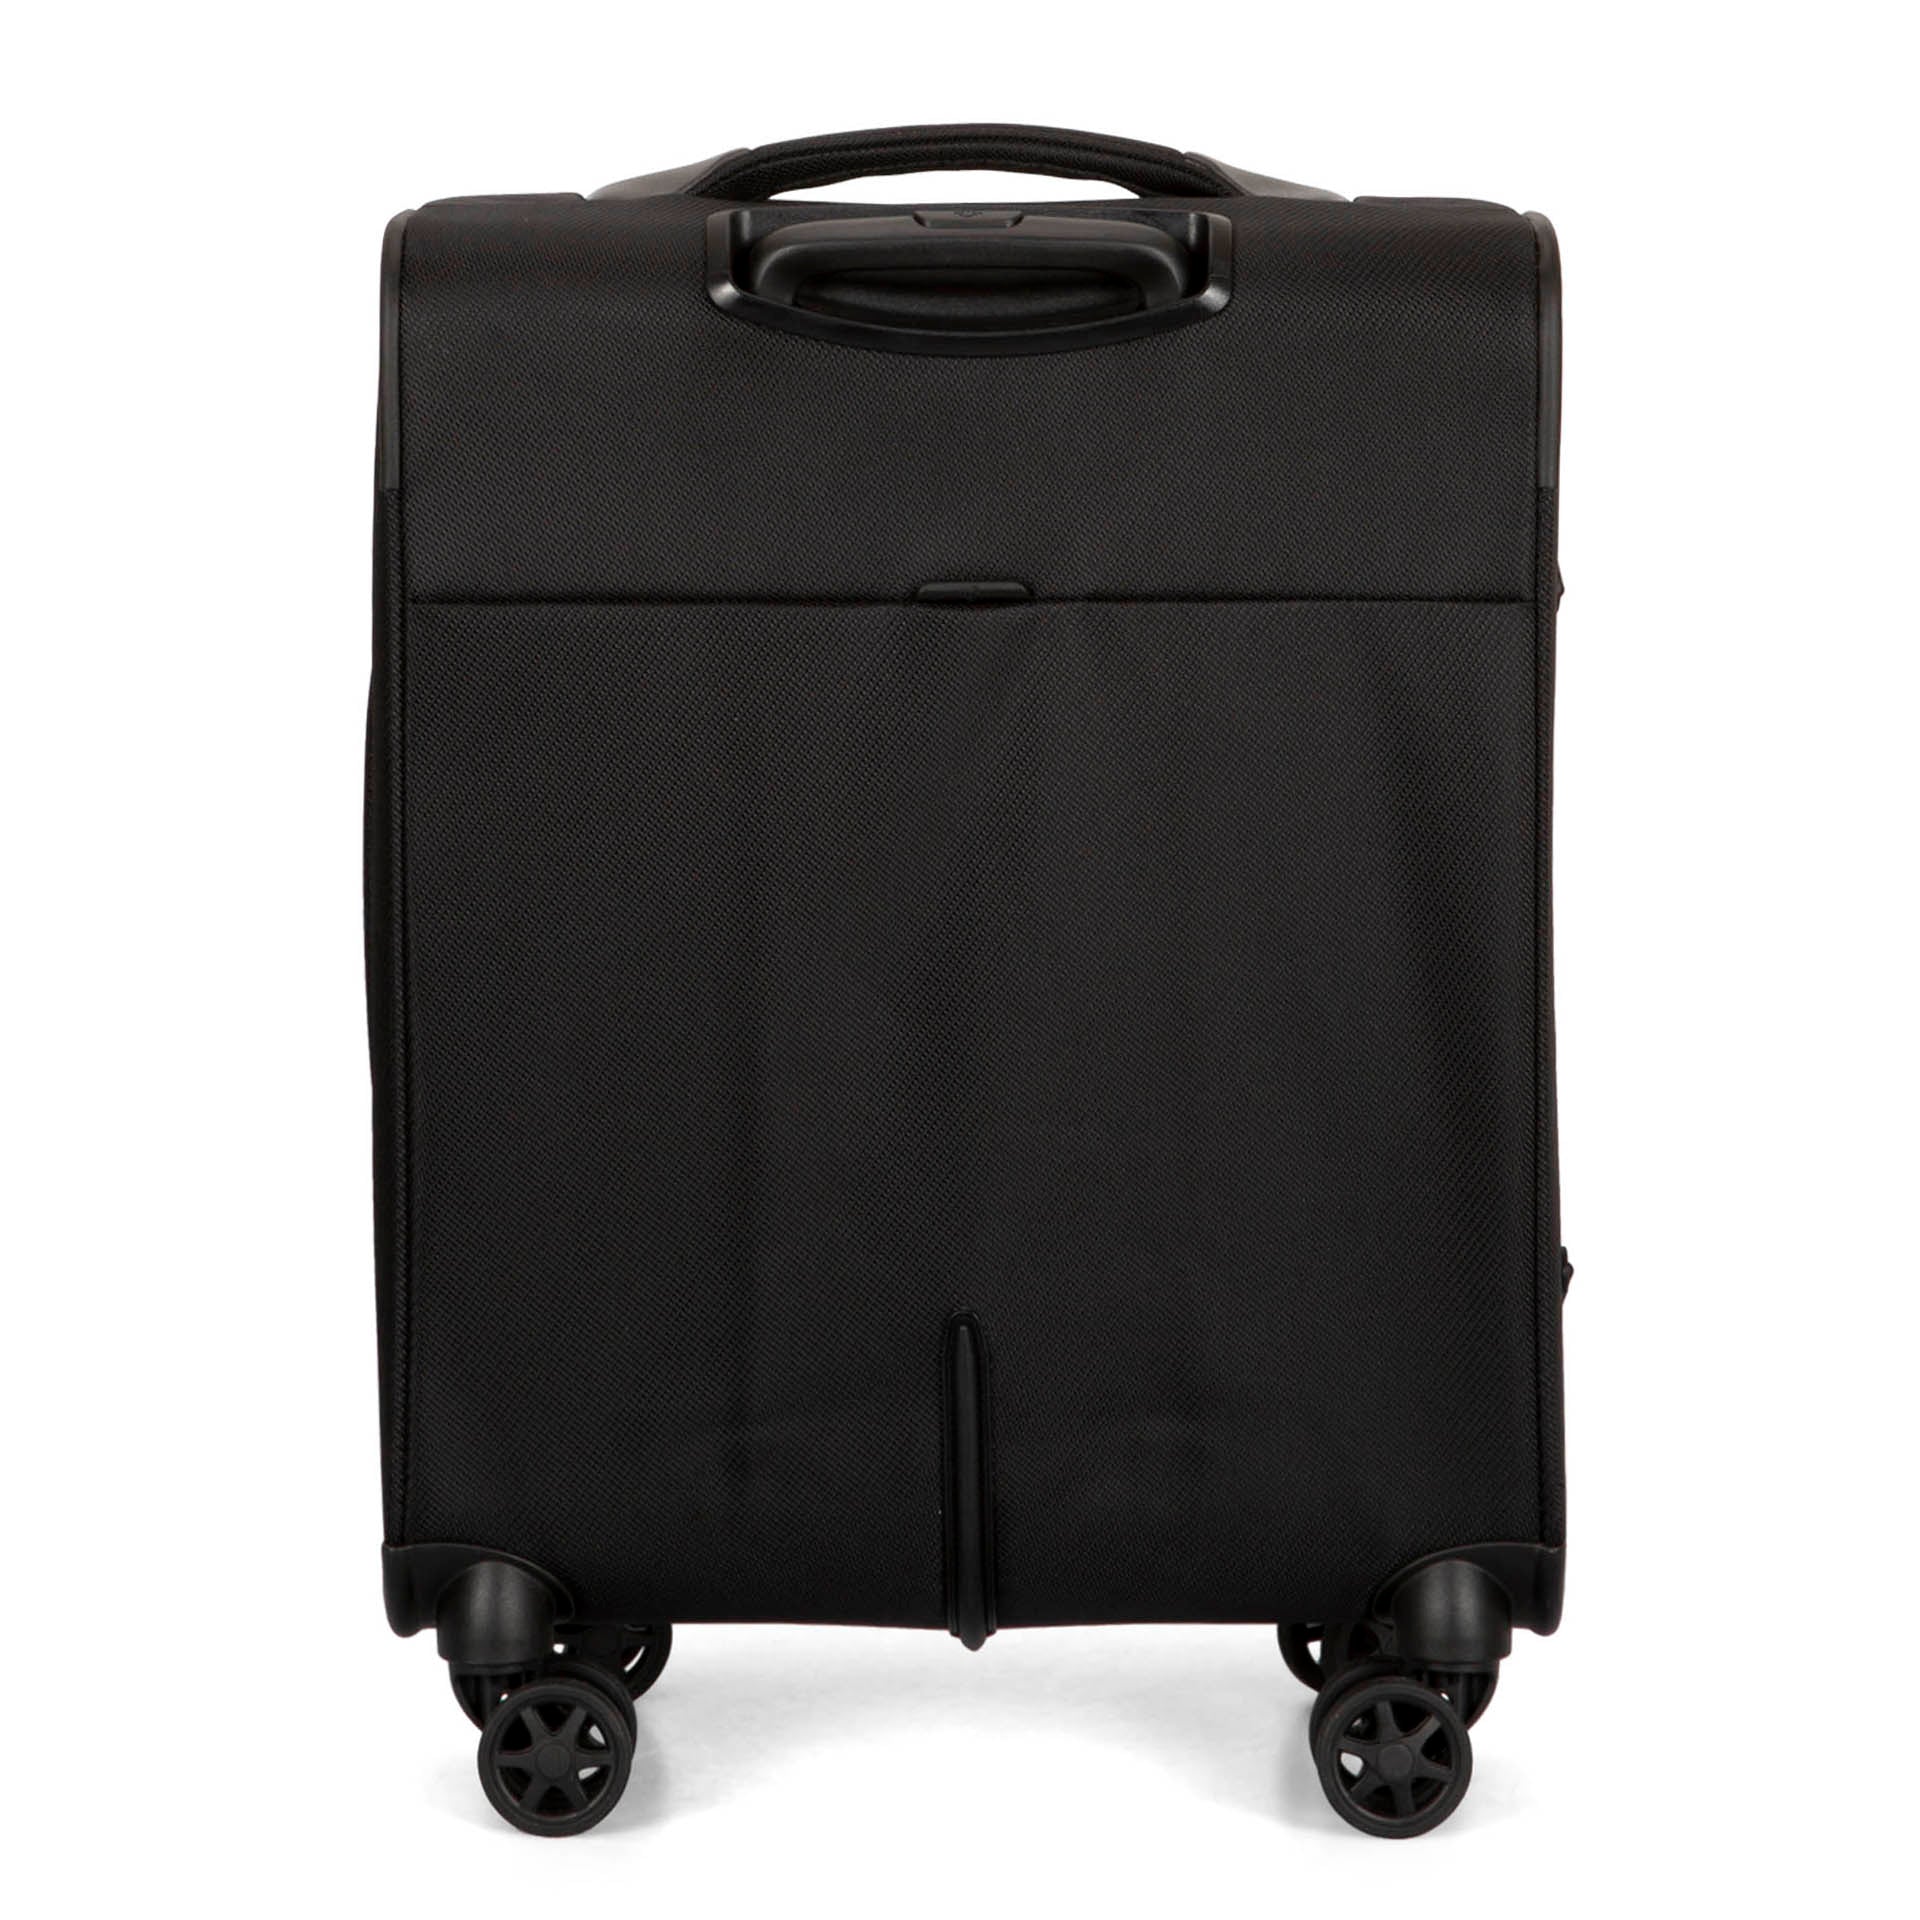 Samsonite Travel Luggage for Men for sale | eBay